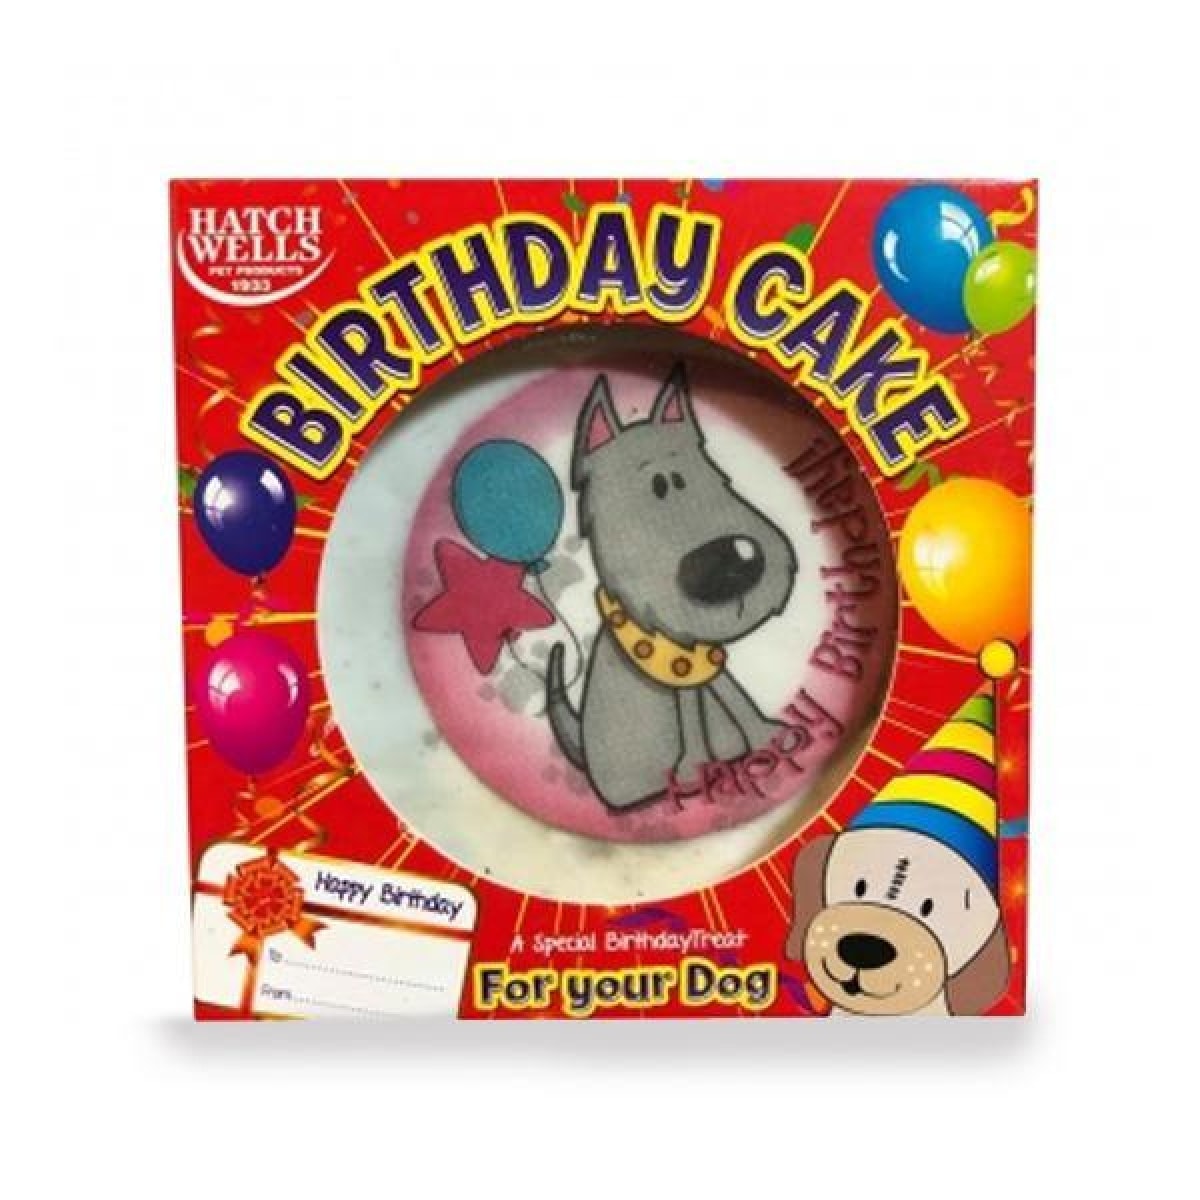 Hatchwells Birthday Cake Main Image